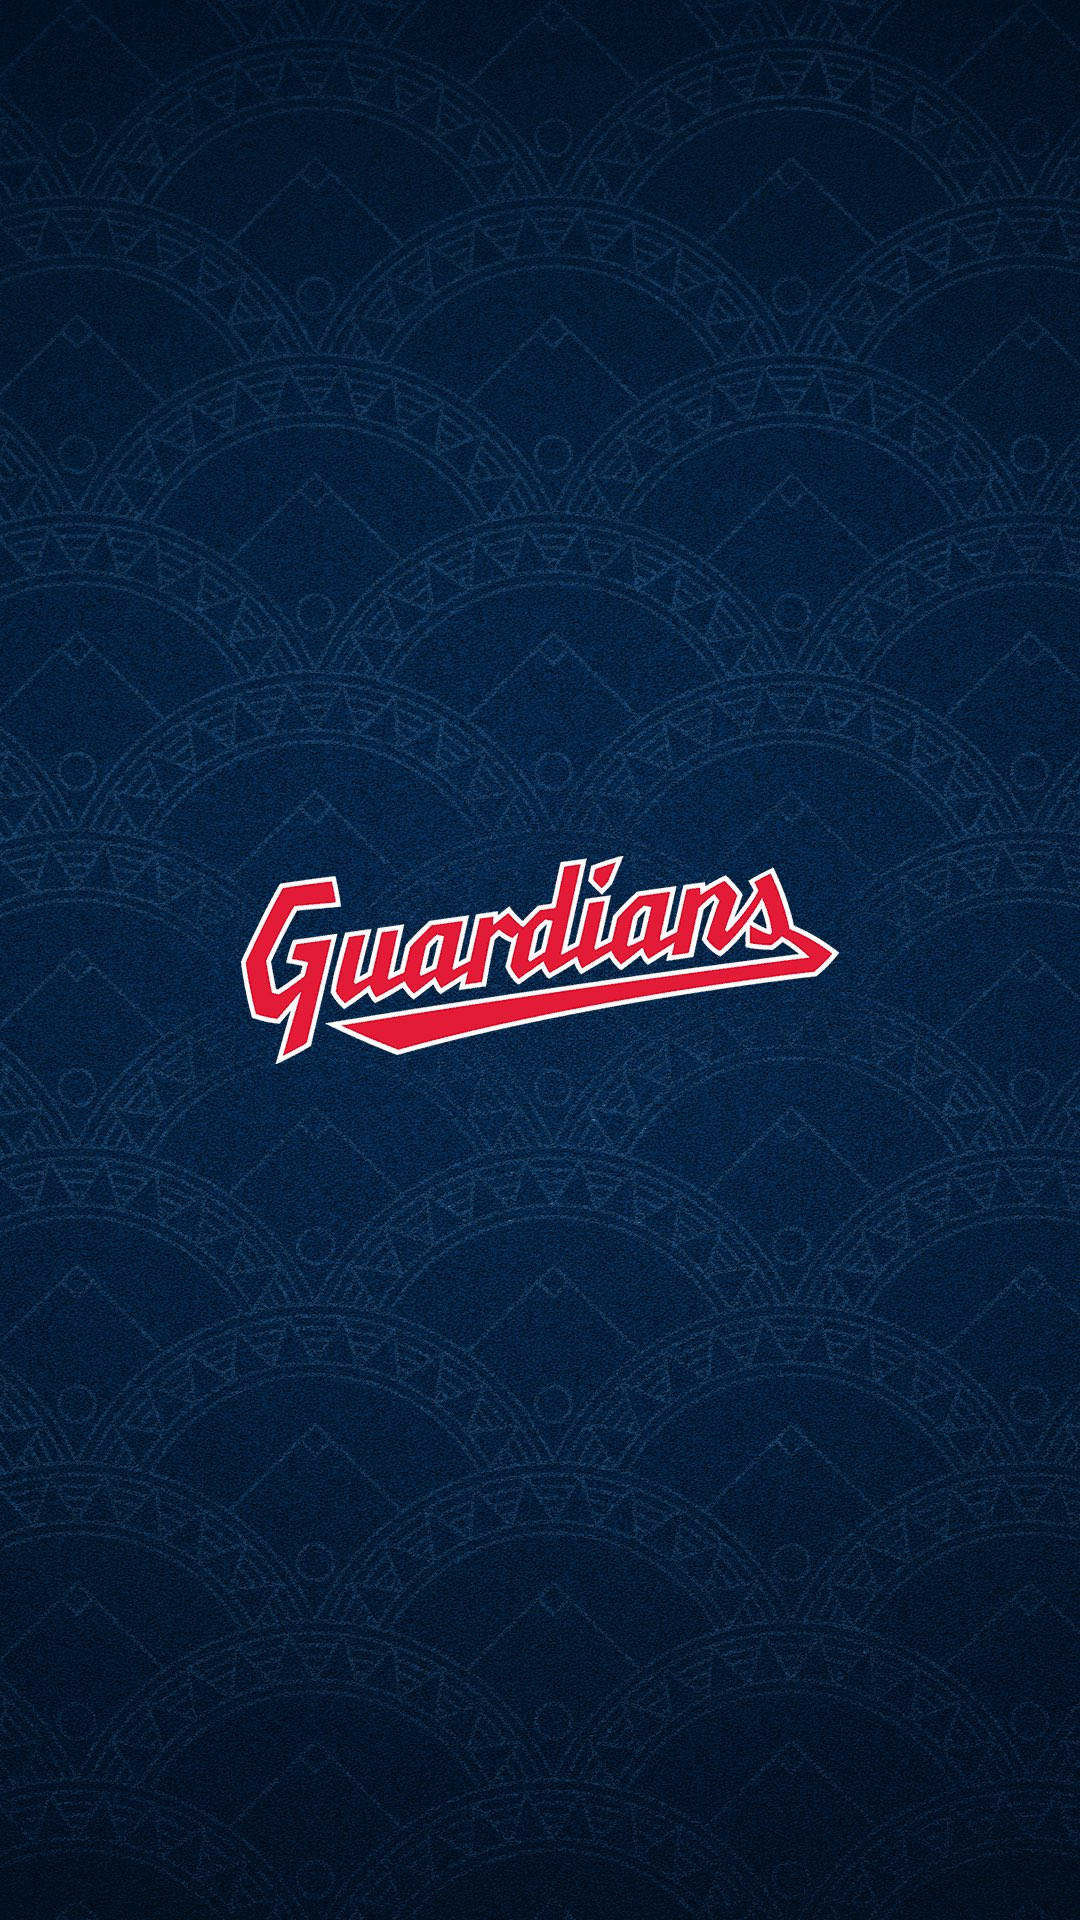 Cleveland Guardians Baseball Team Wordmark Wallpaper